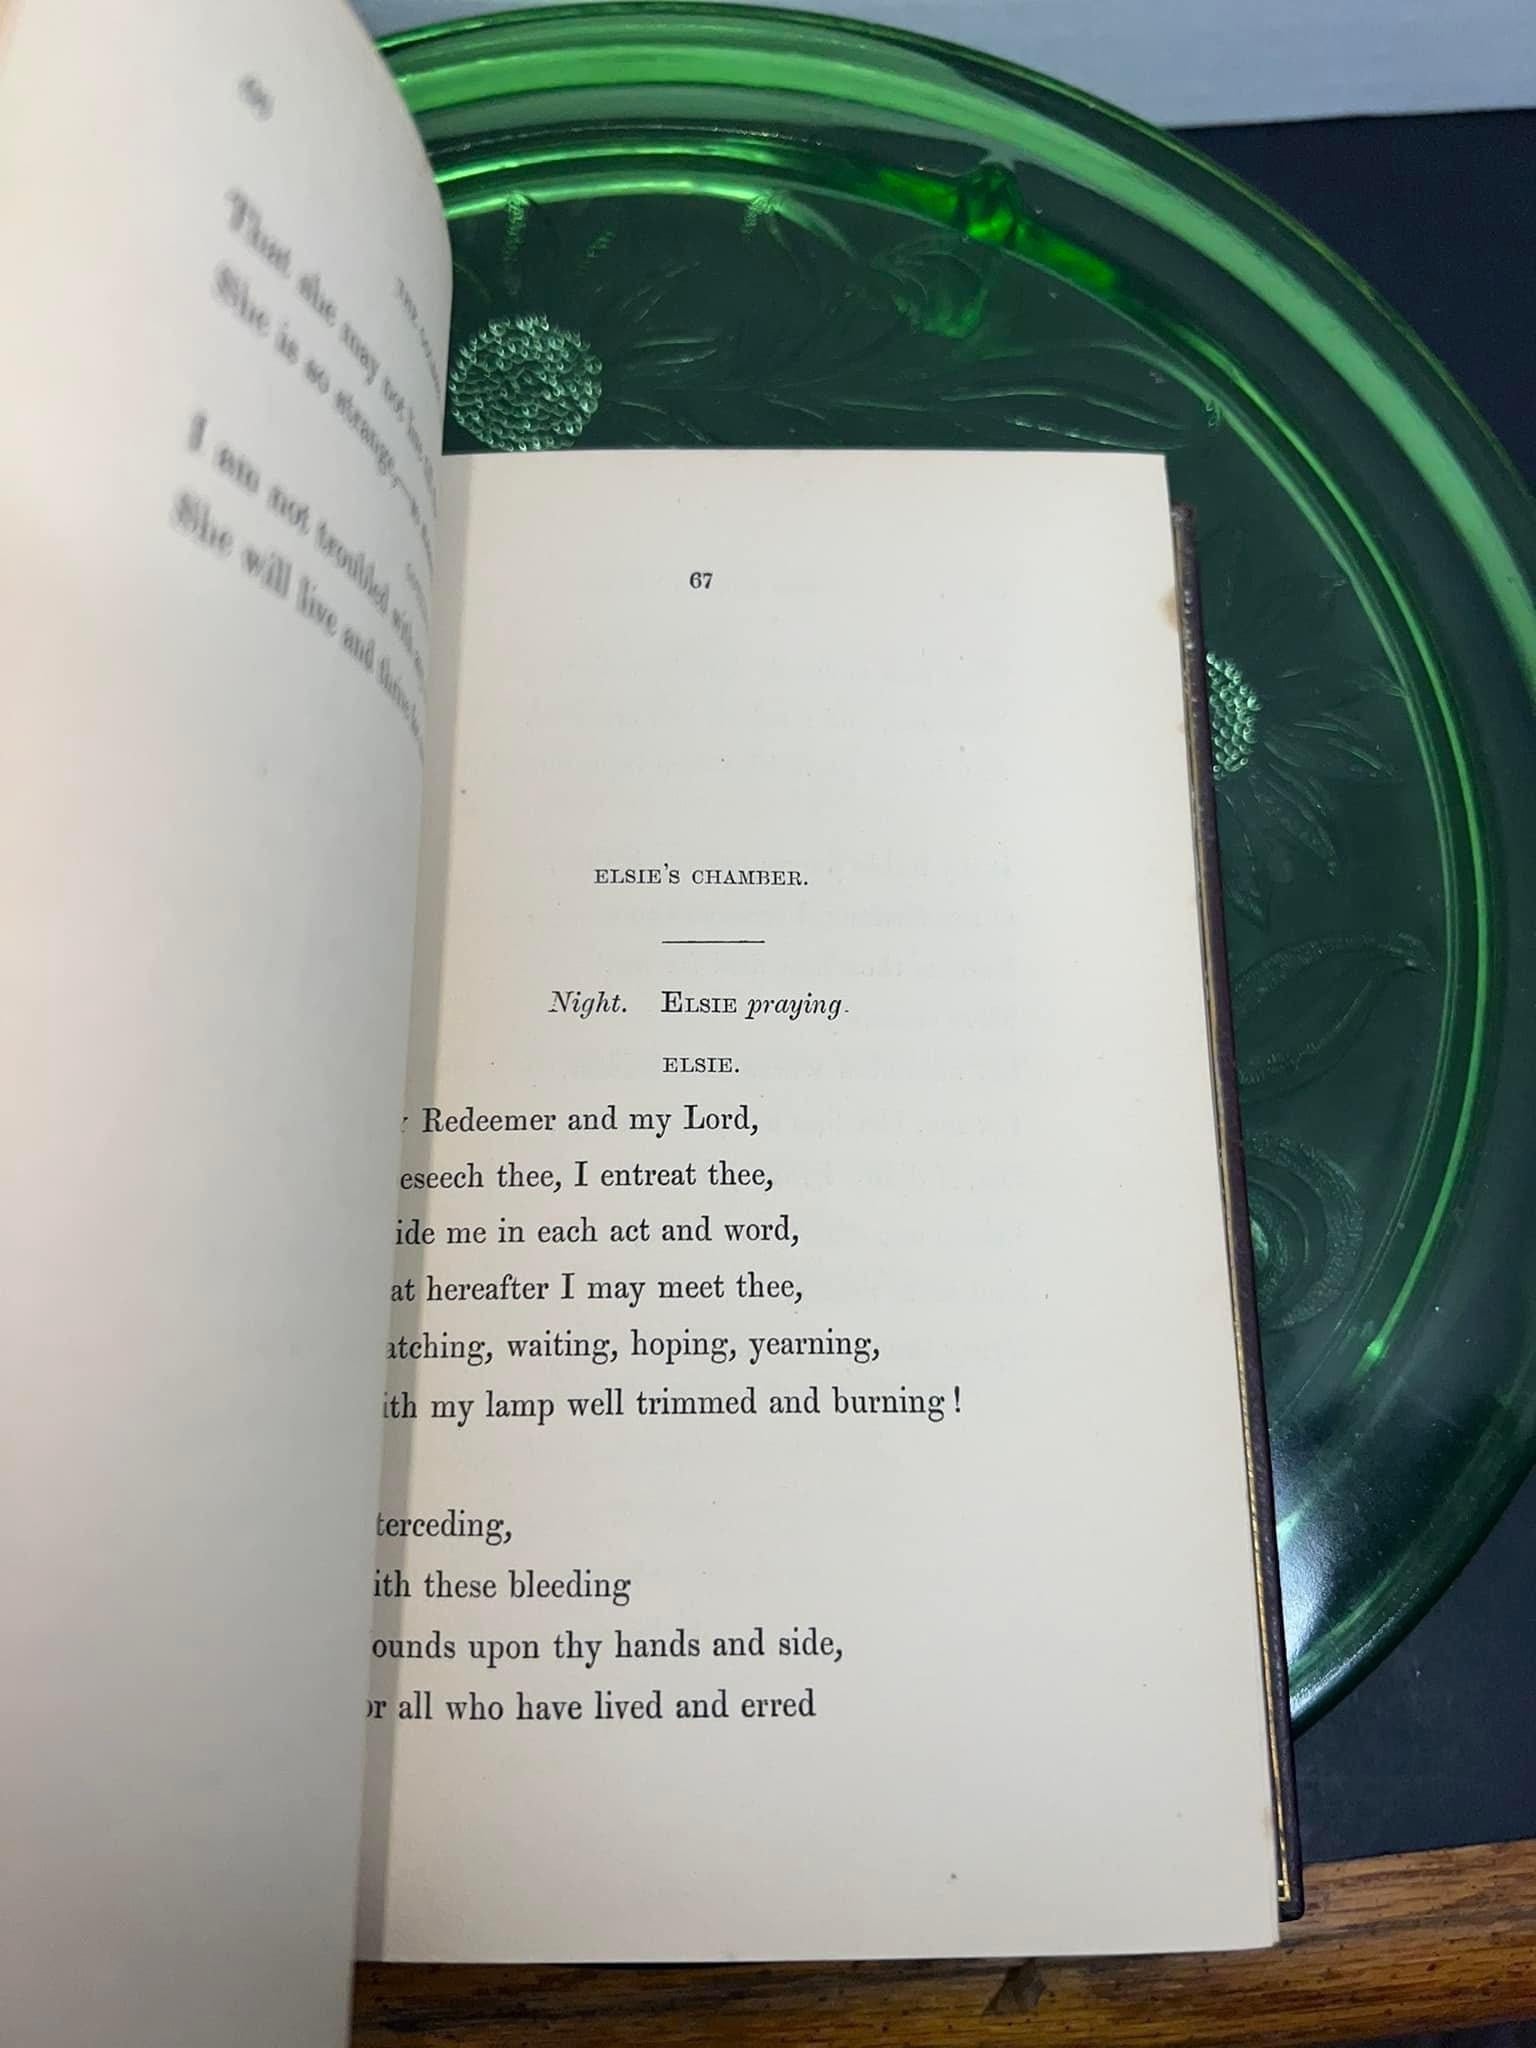 Antique Victorian poetry Longfellow’s golden legend 1851 London